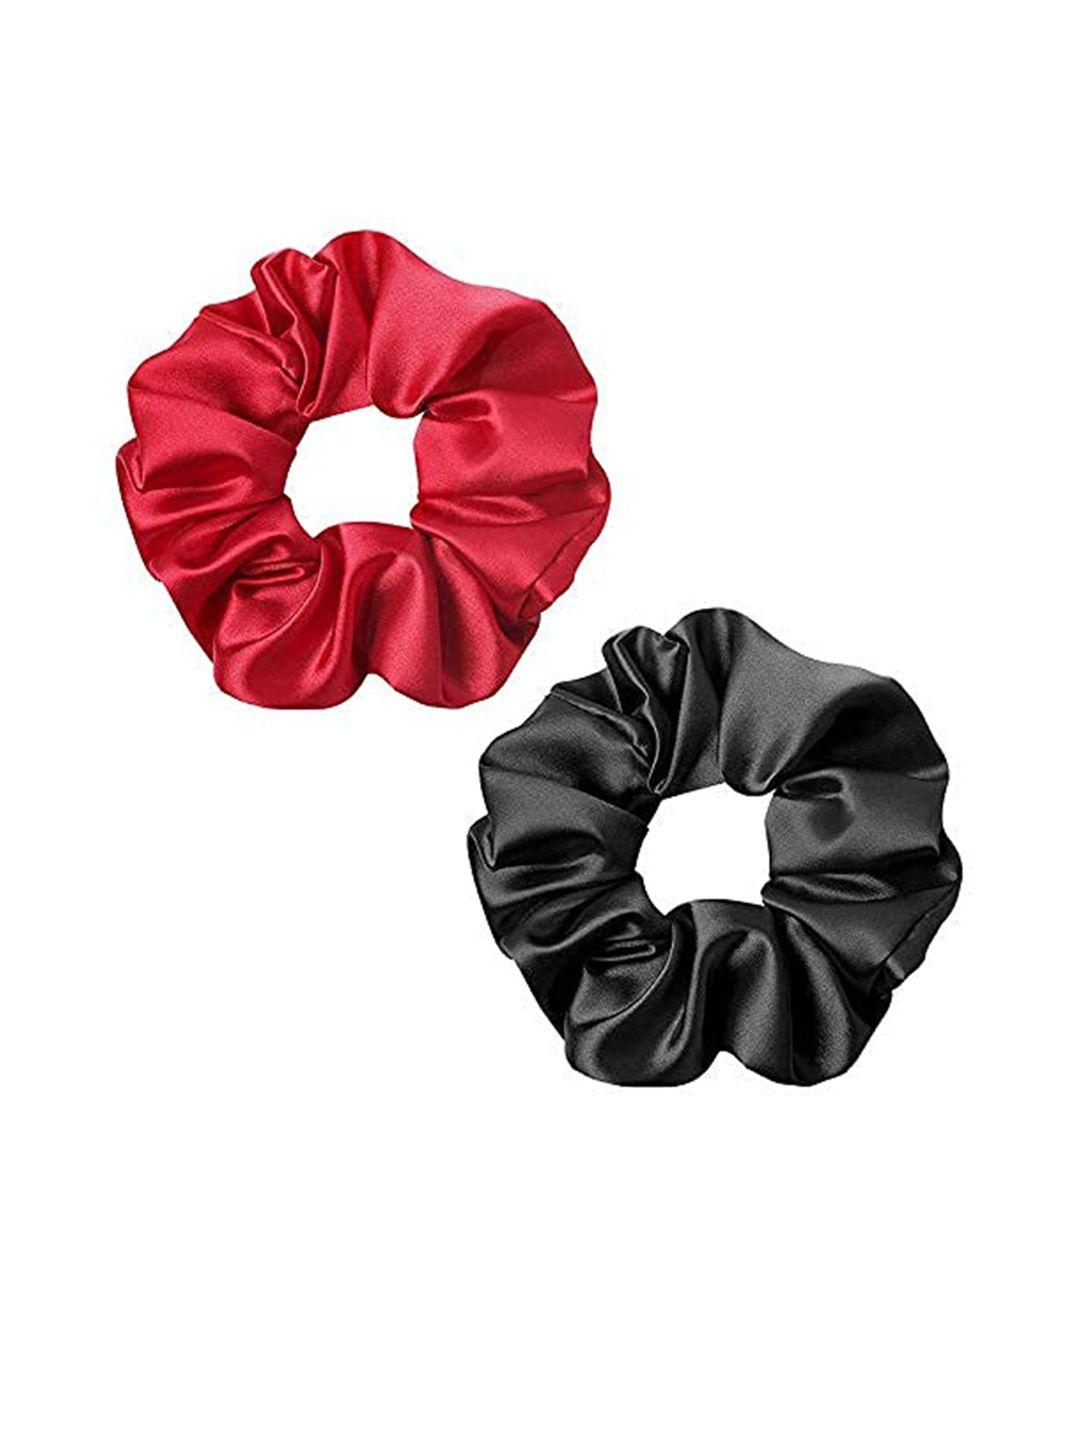 chronex set of 2 red & black scrunchie